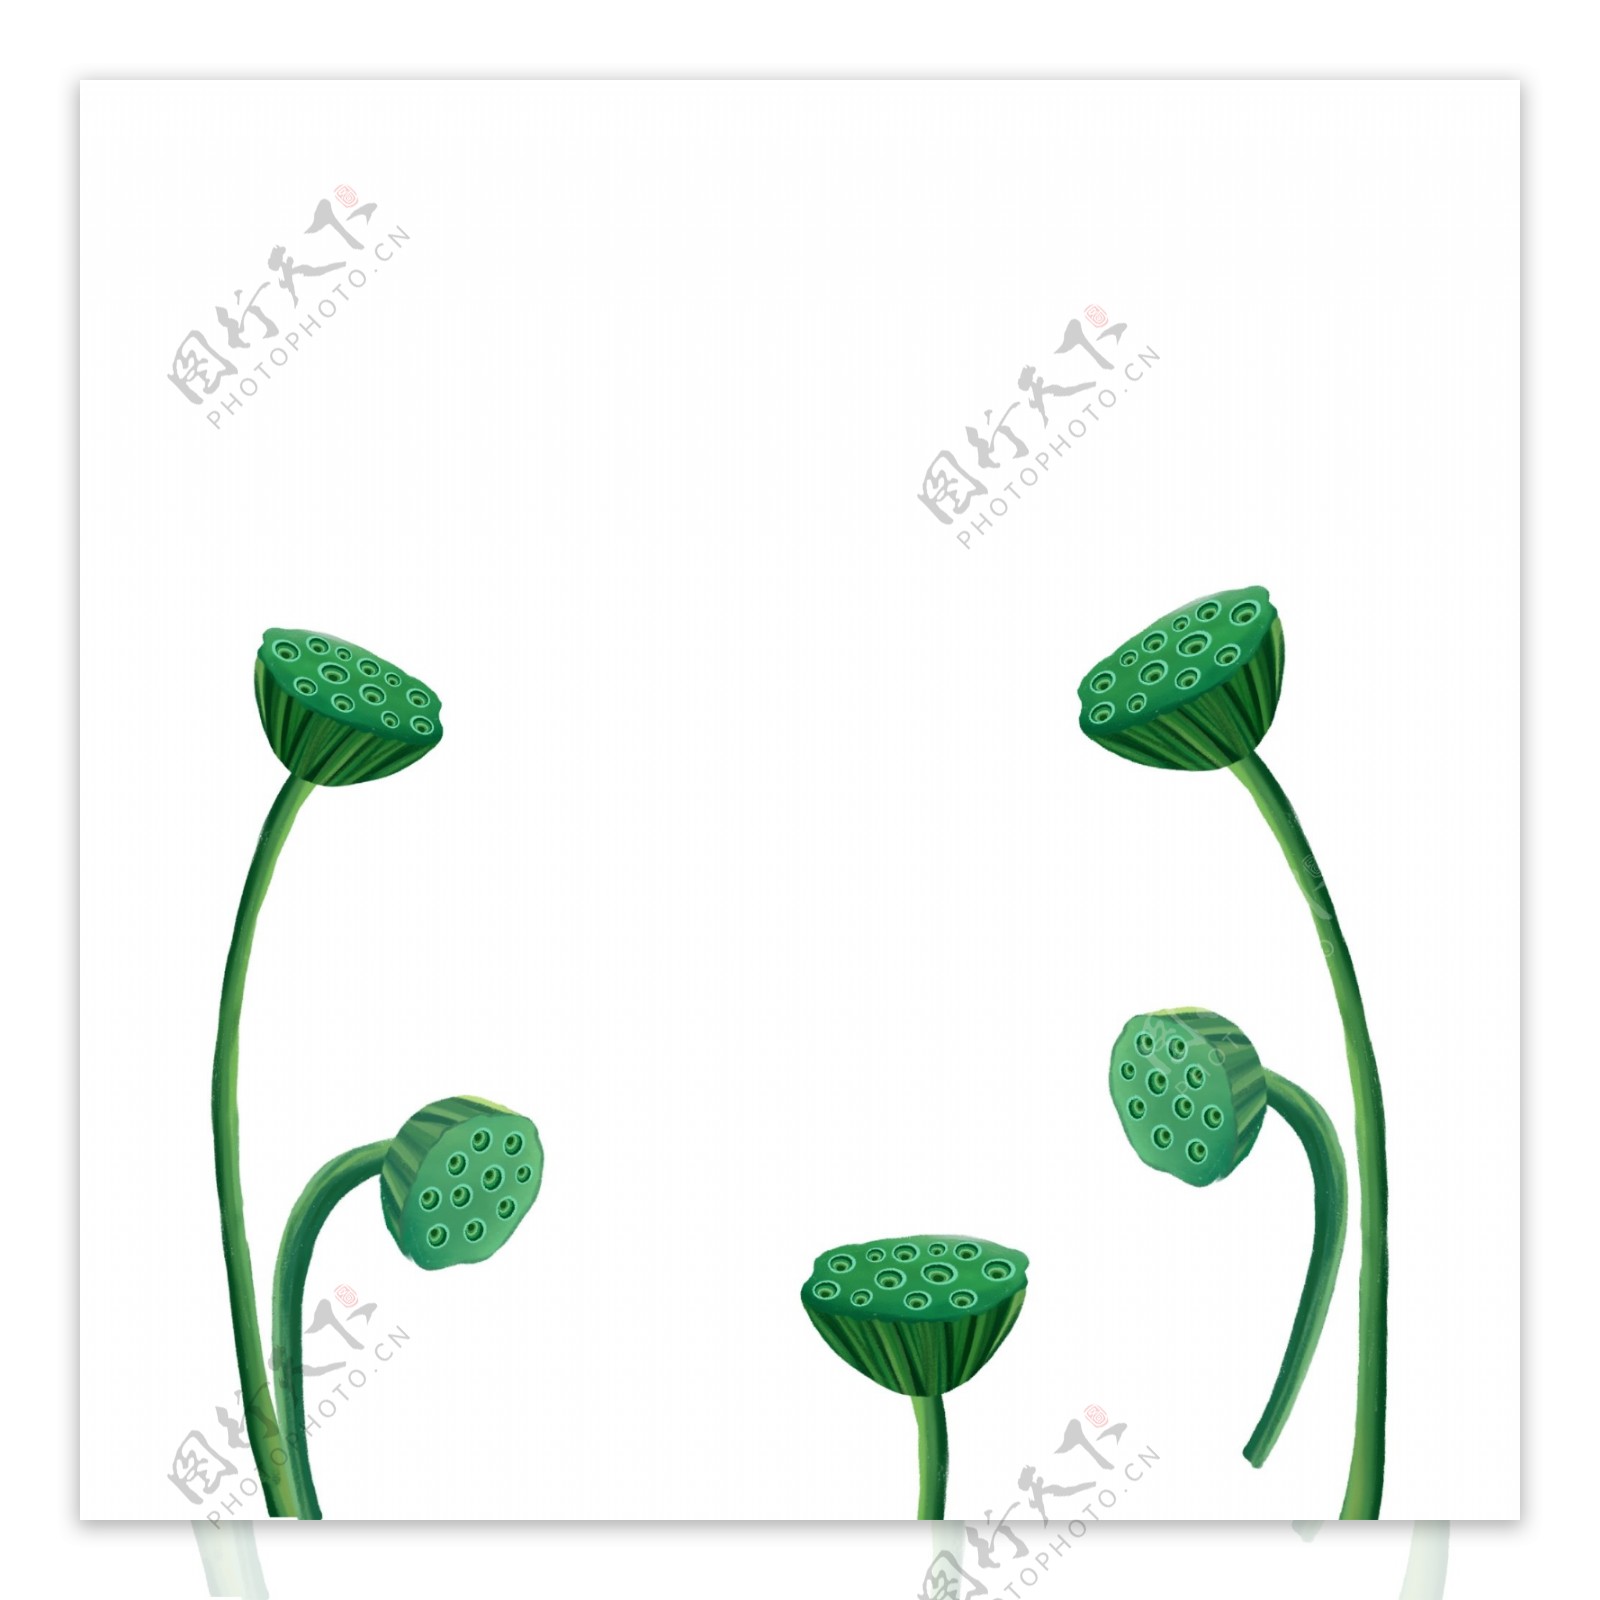 可爱绿色莲蓬装饰元素